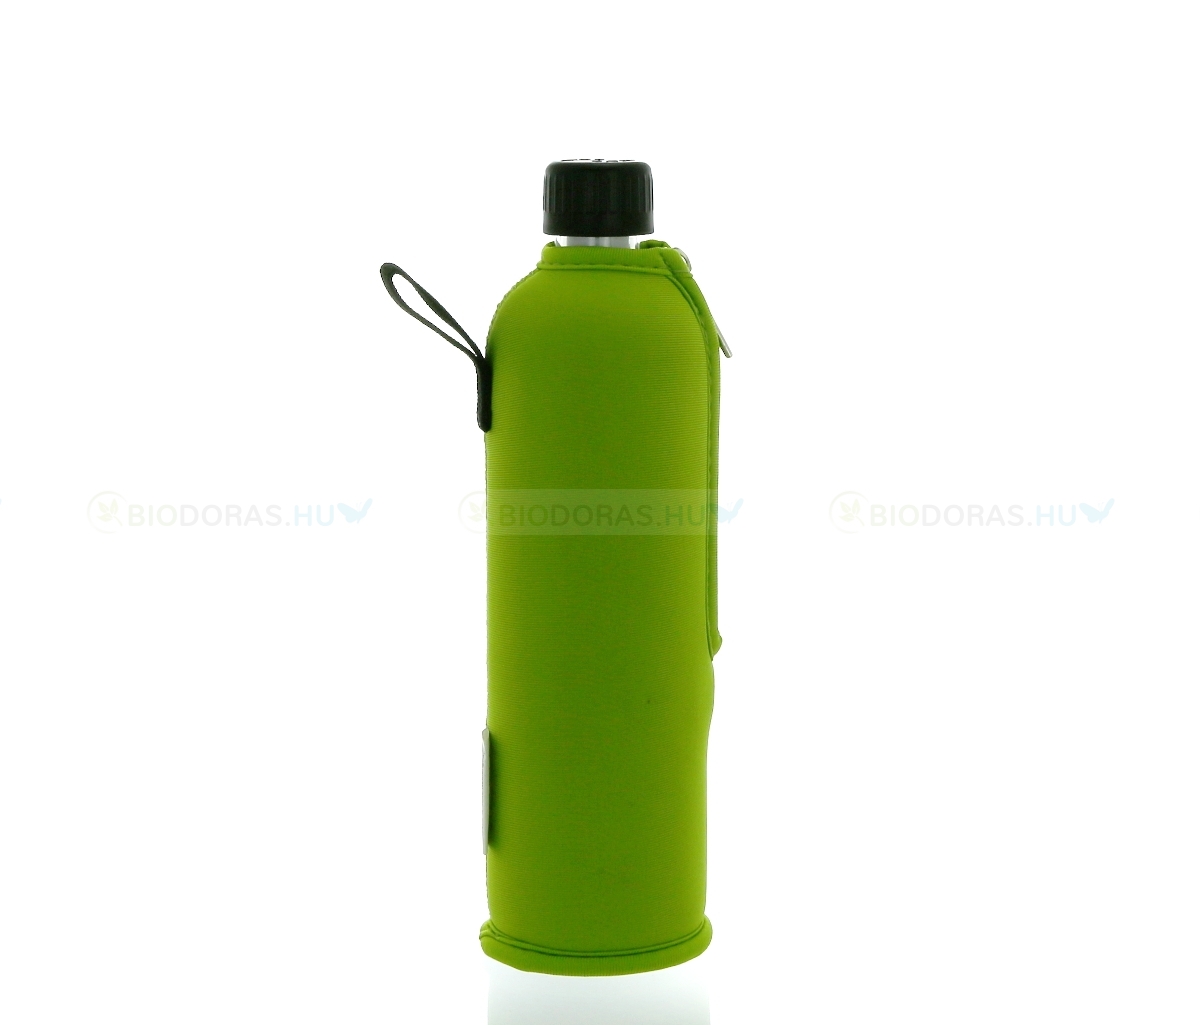 DORAS Üvegkulacs (üvegpalack) neonzöld színű neoprén huzattal - 350 ml